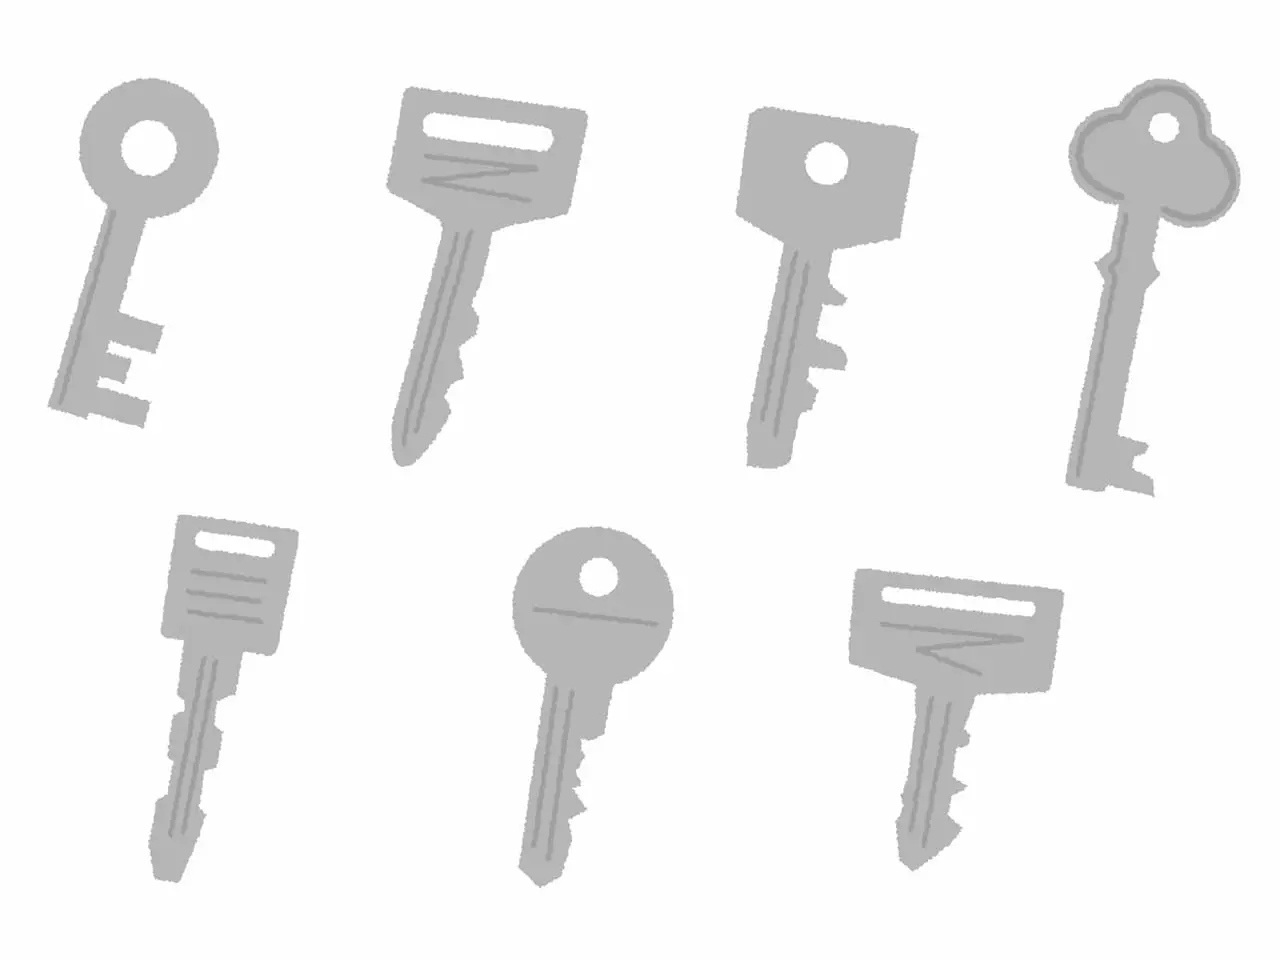 Miwaの合鍵を作りたい 作成における注意点を解説します 鍵開け 鍵交換 Key110